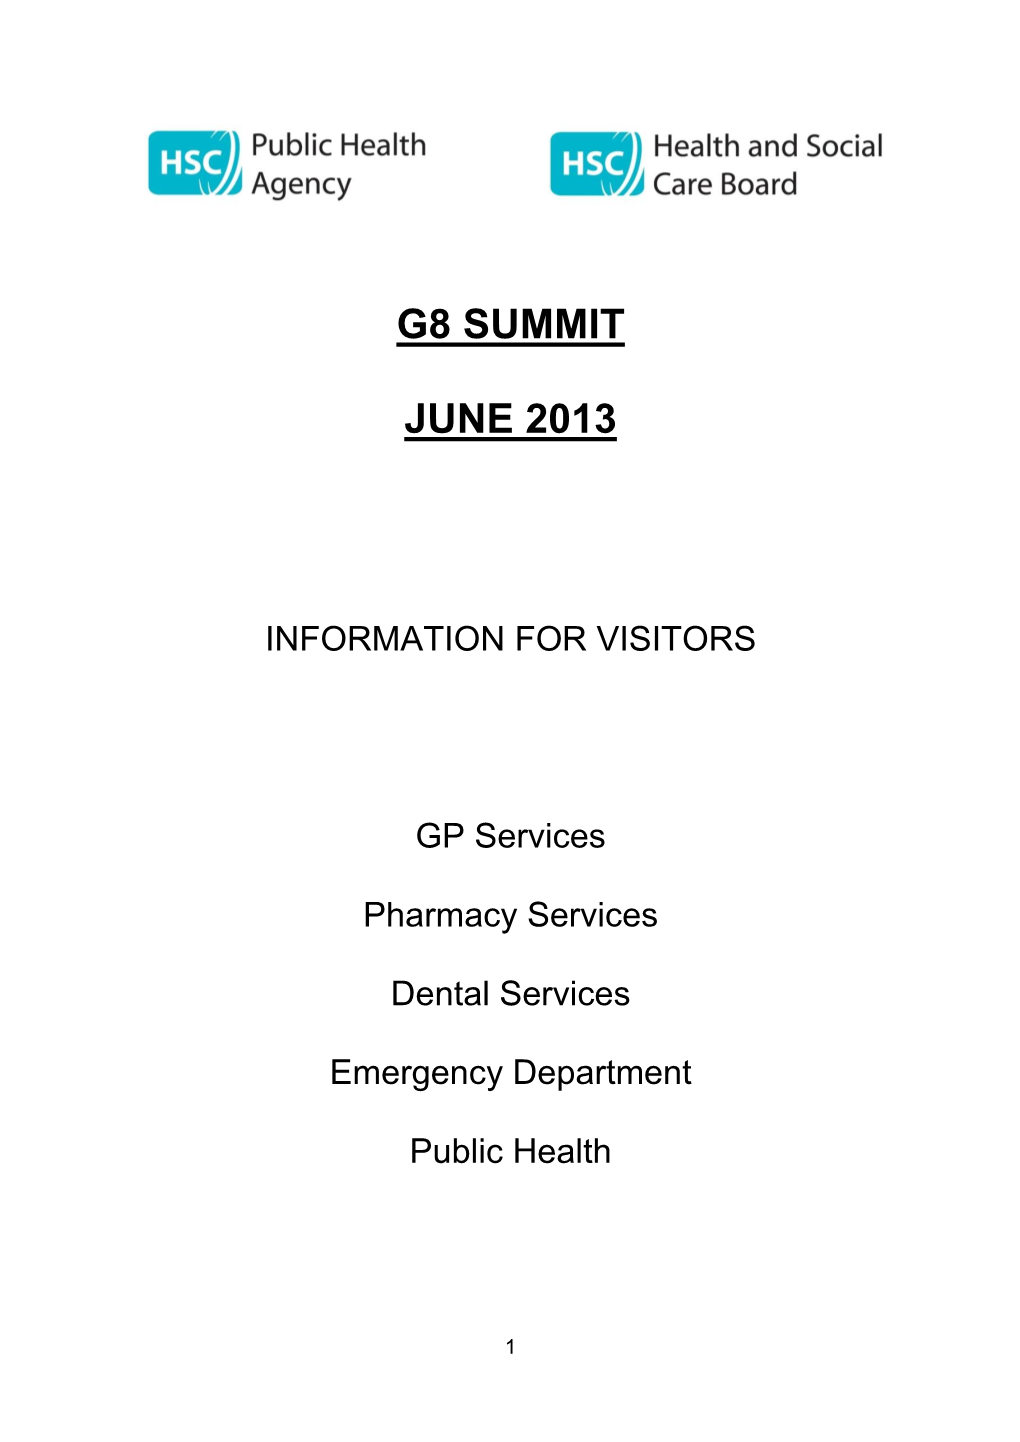 G8 Summit June 2013